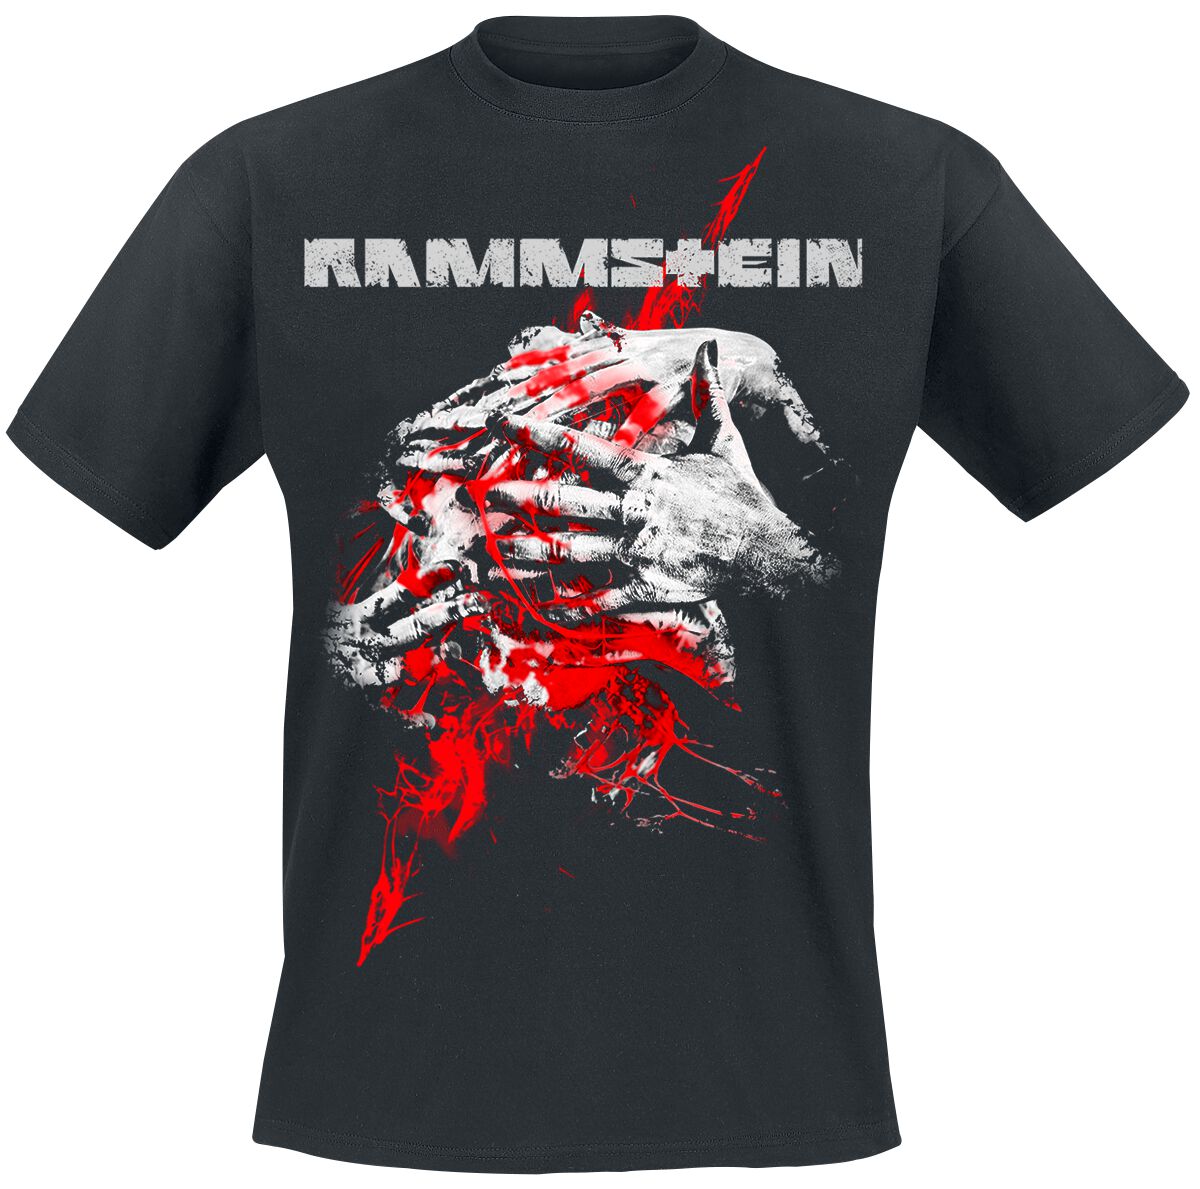 Rammstein T-Shirt - Angst - 4XL bis 5XL - für Männer - Größe 4XL - schwarz  - Lizenziertes Merchandise! von Rammstein